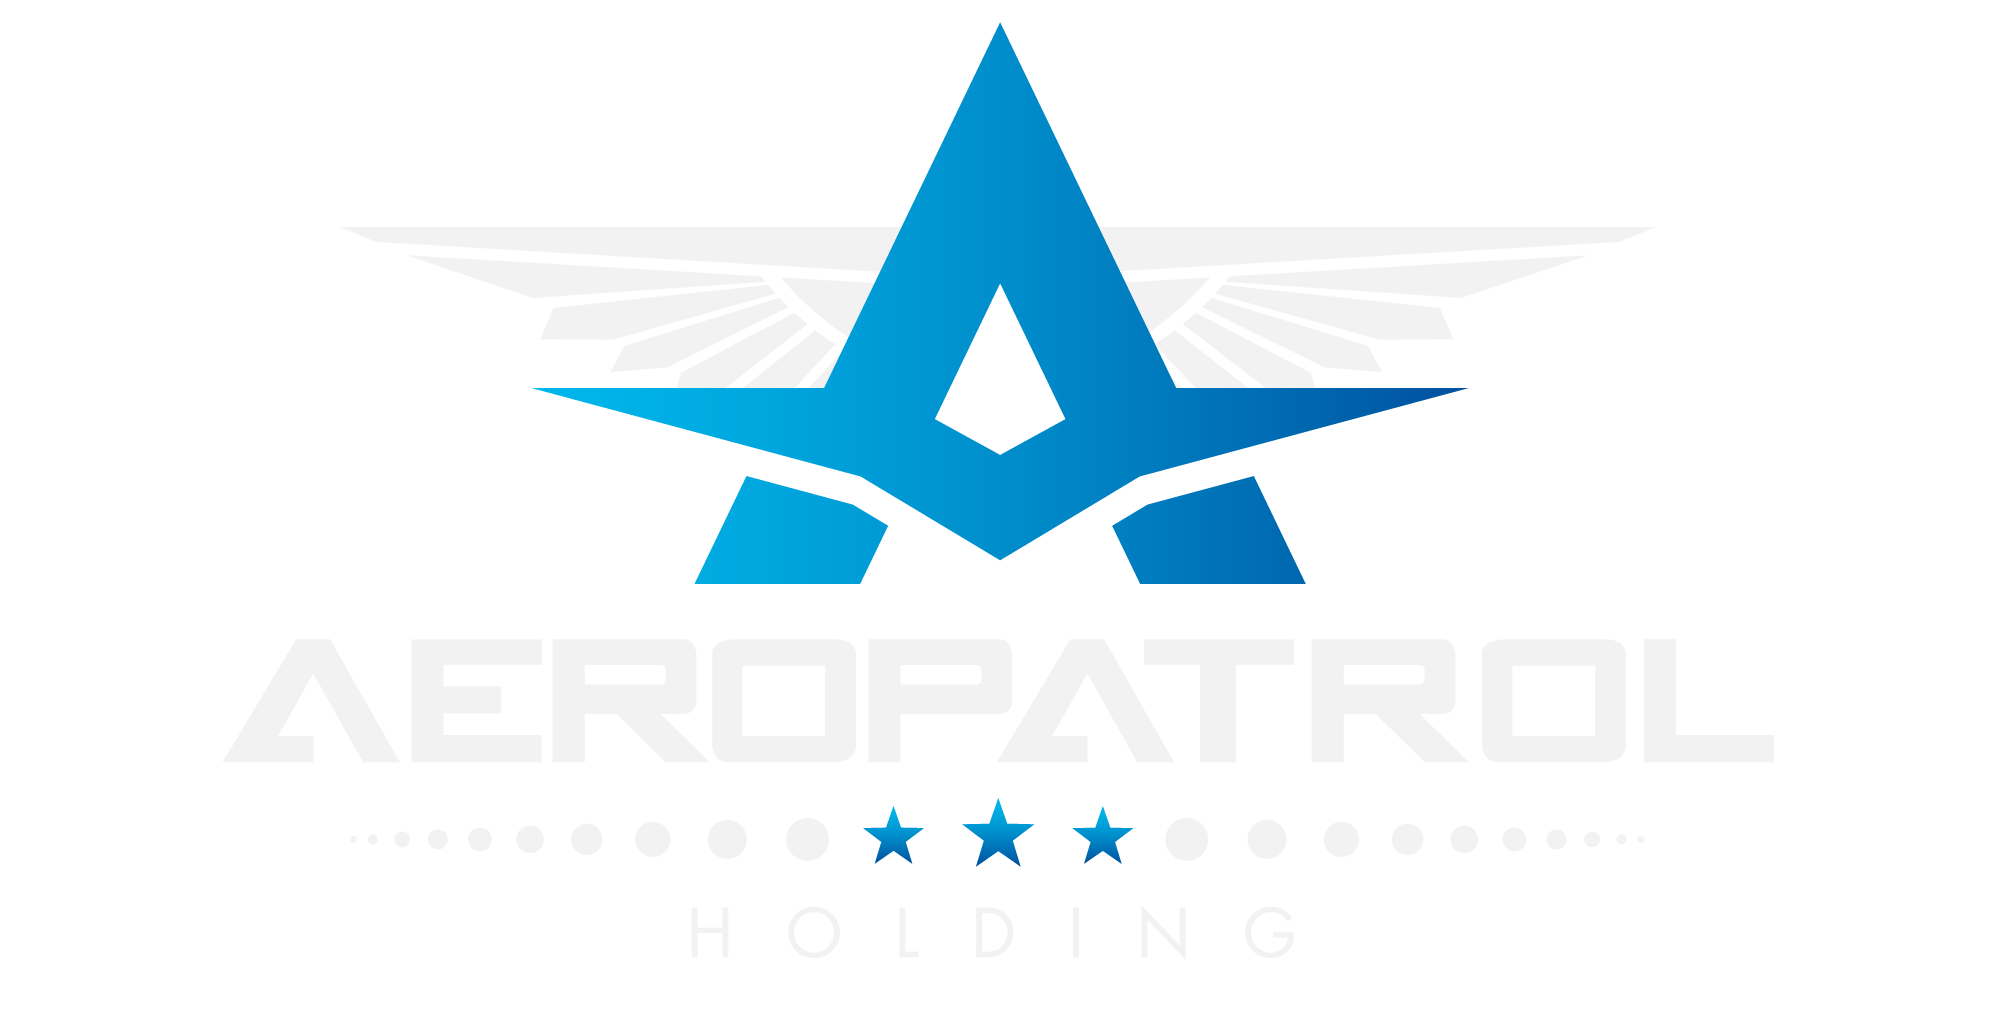 AeroPatrol